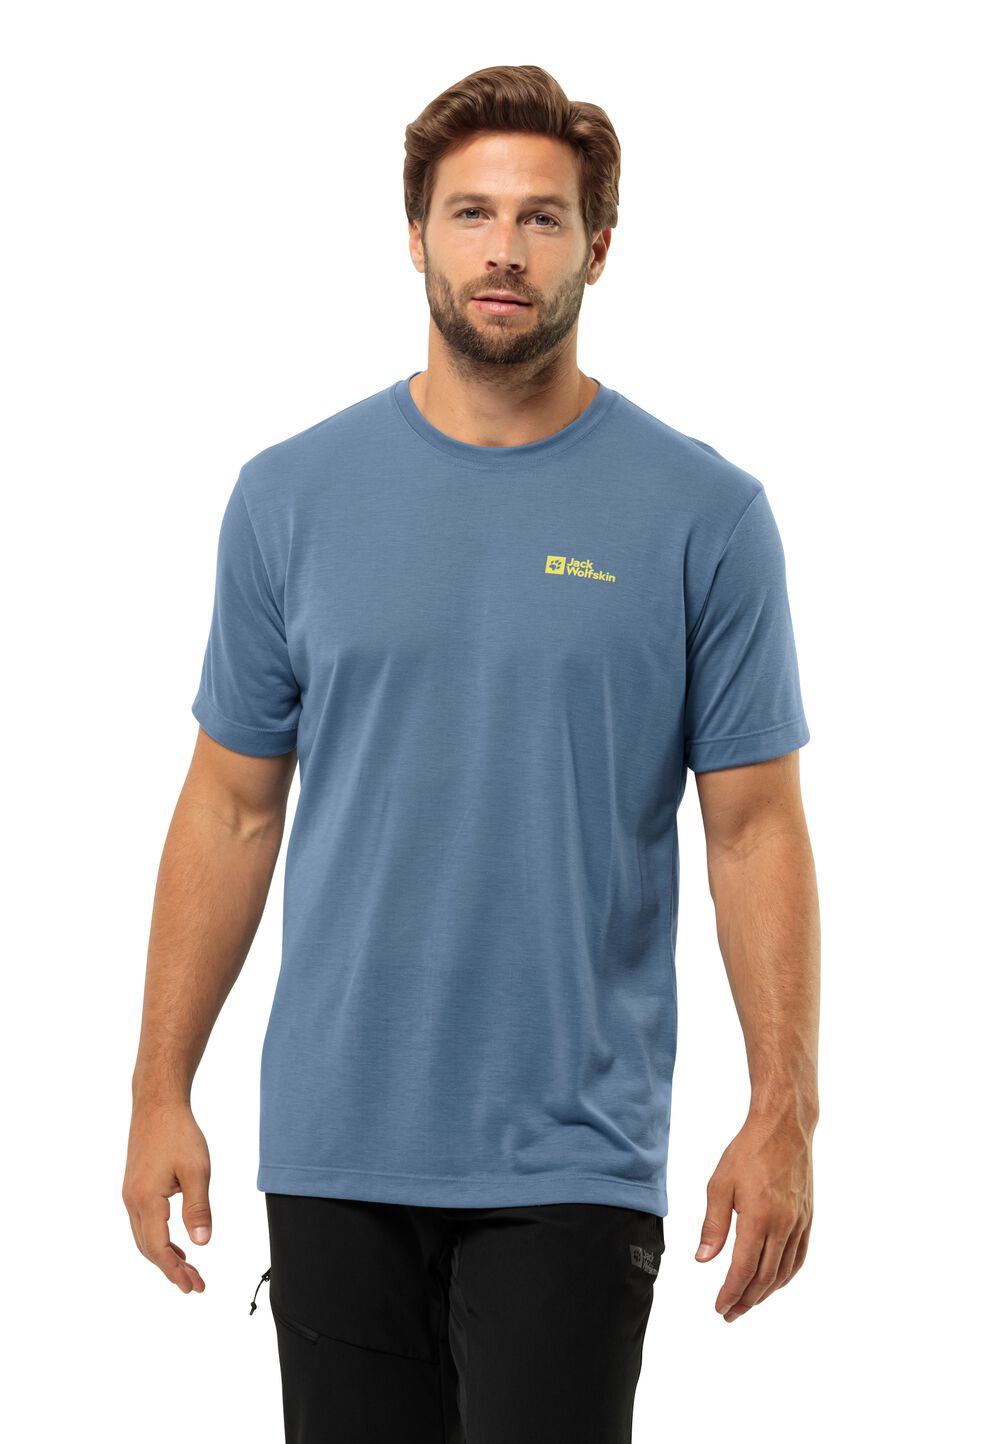 Jack Wolfskin Vonnan S S T-Shirt Men Functioneel shirt Heren S elemental blue elemental blue